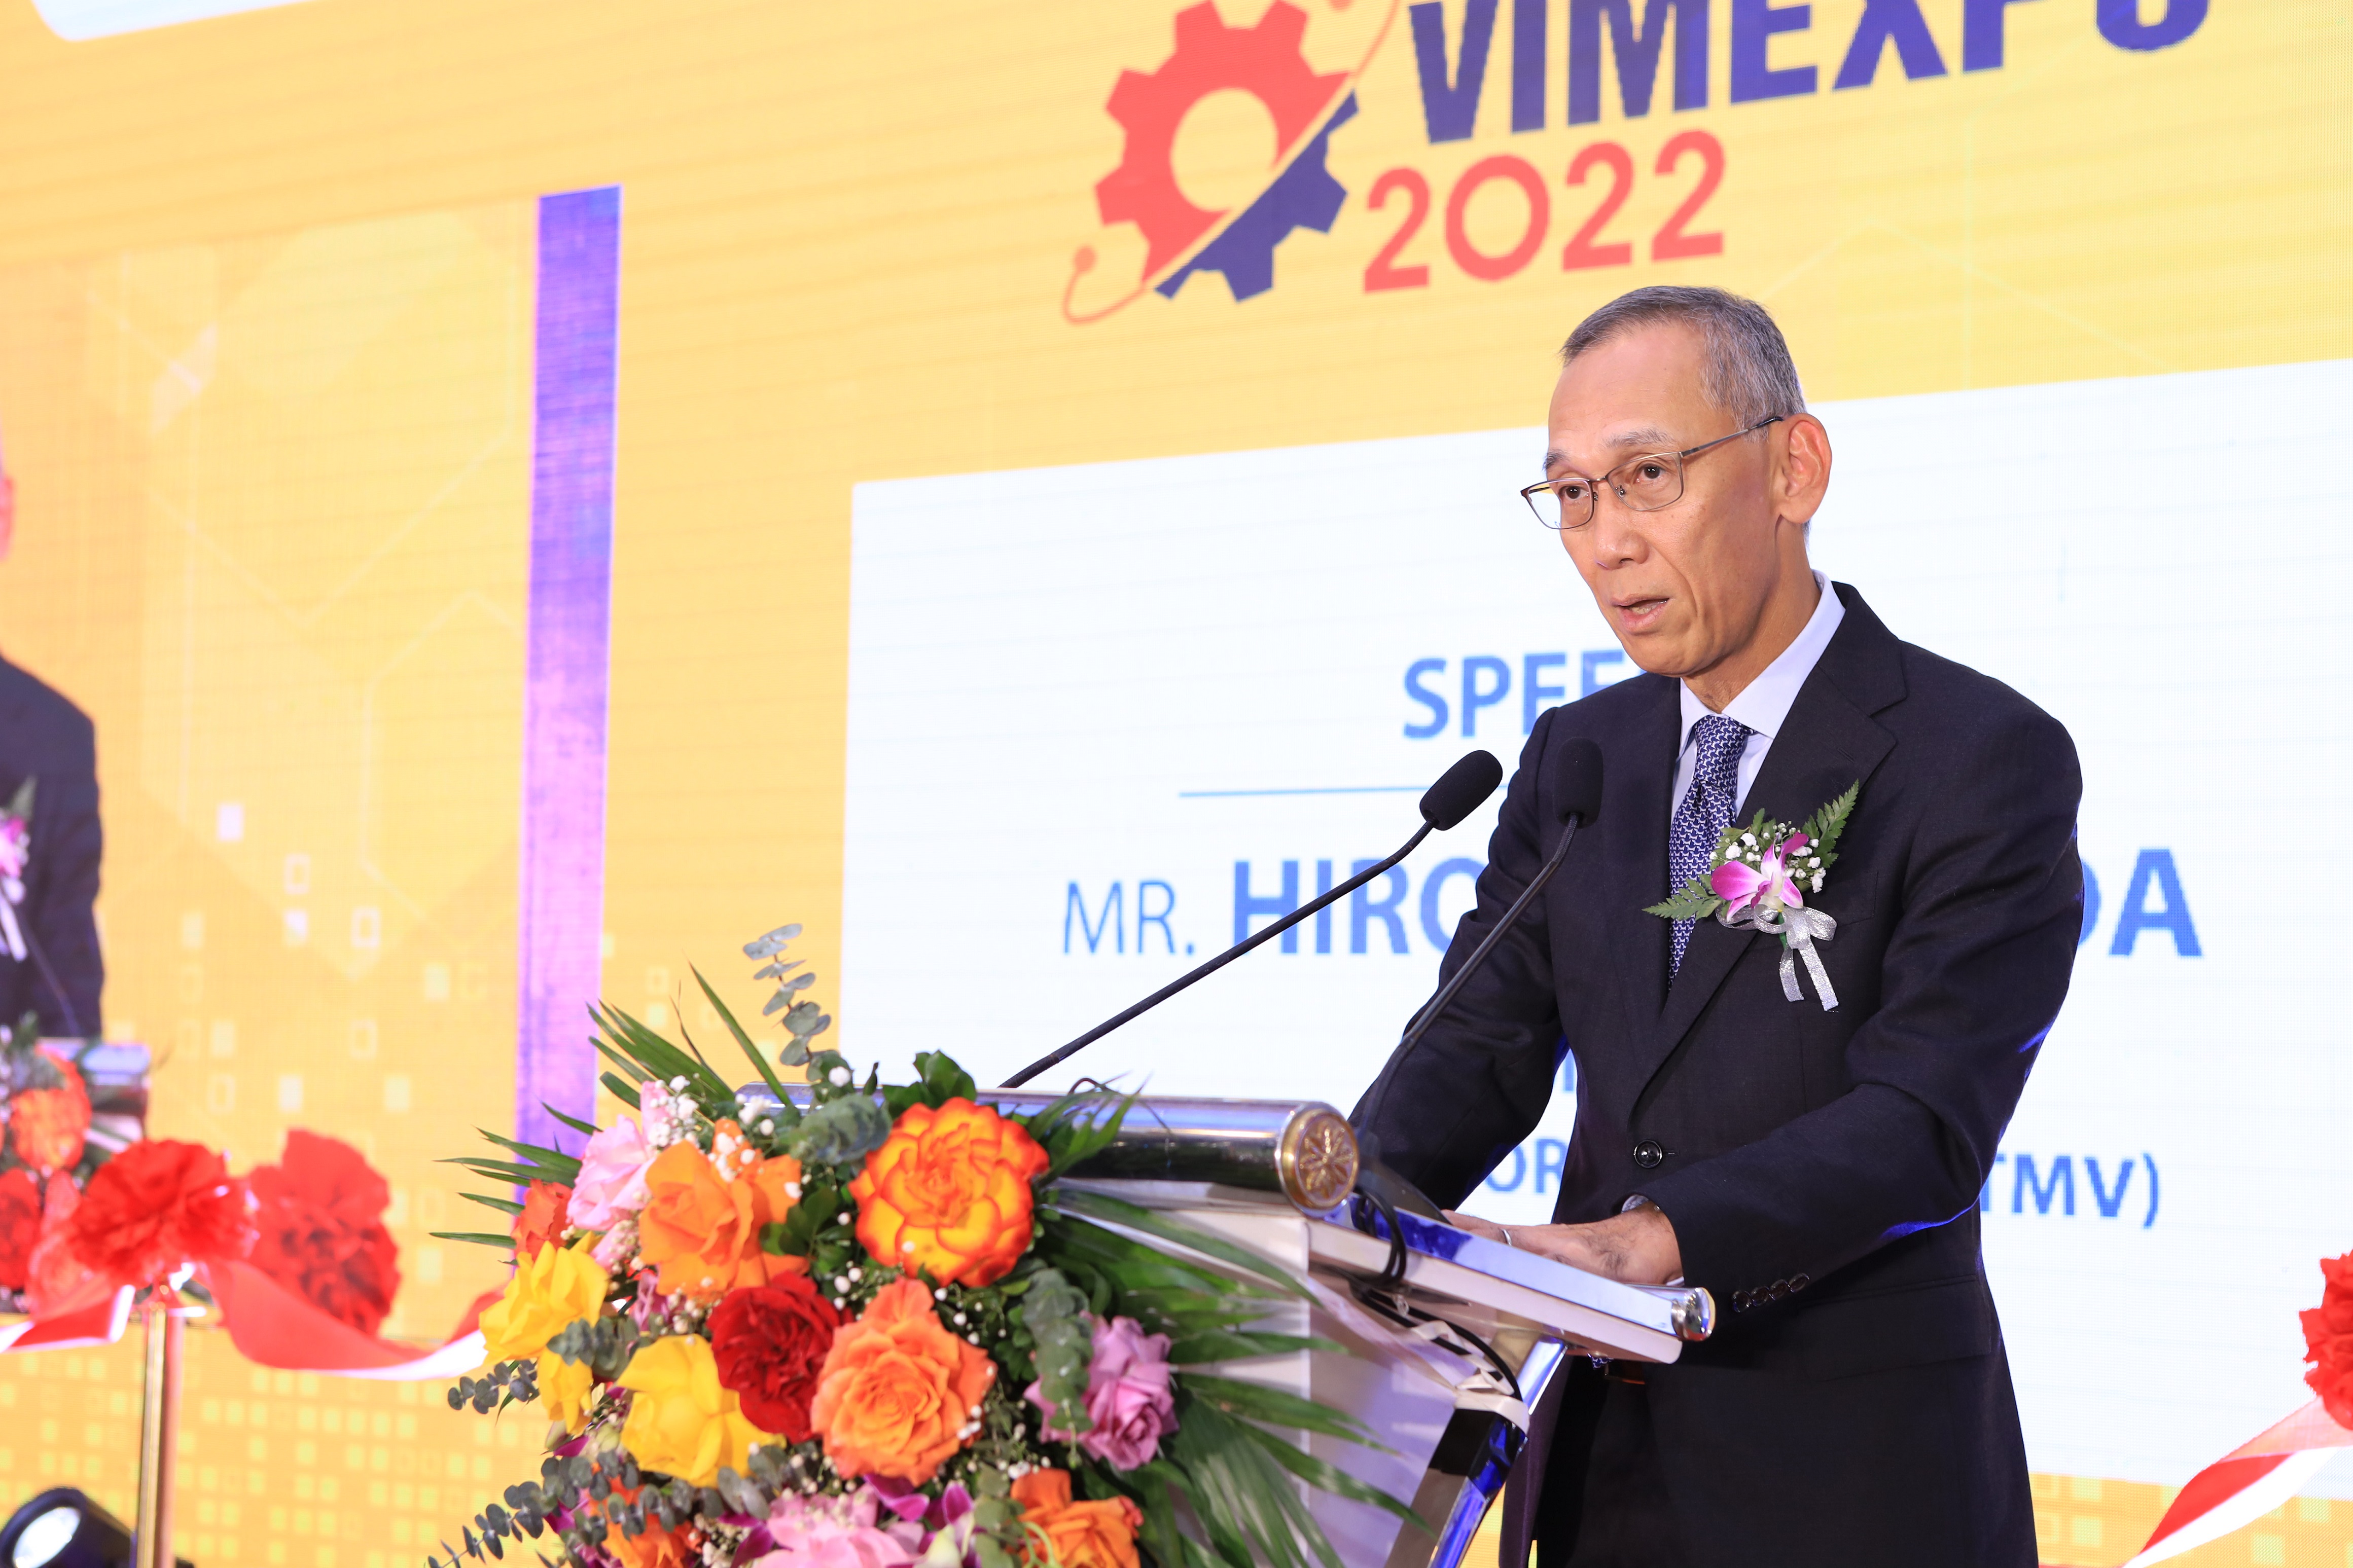 Toyota Việt Nam tham gia triển lãm Công nghiệp hỗ trợ và chế biến, chế tạo VIMEXPO lần thứ 3